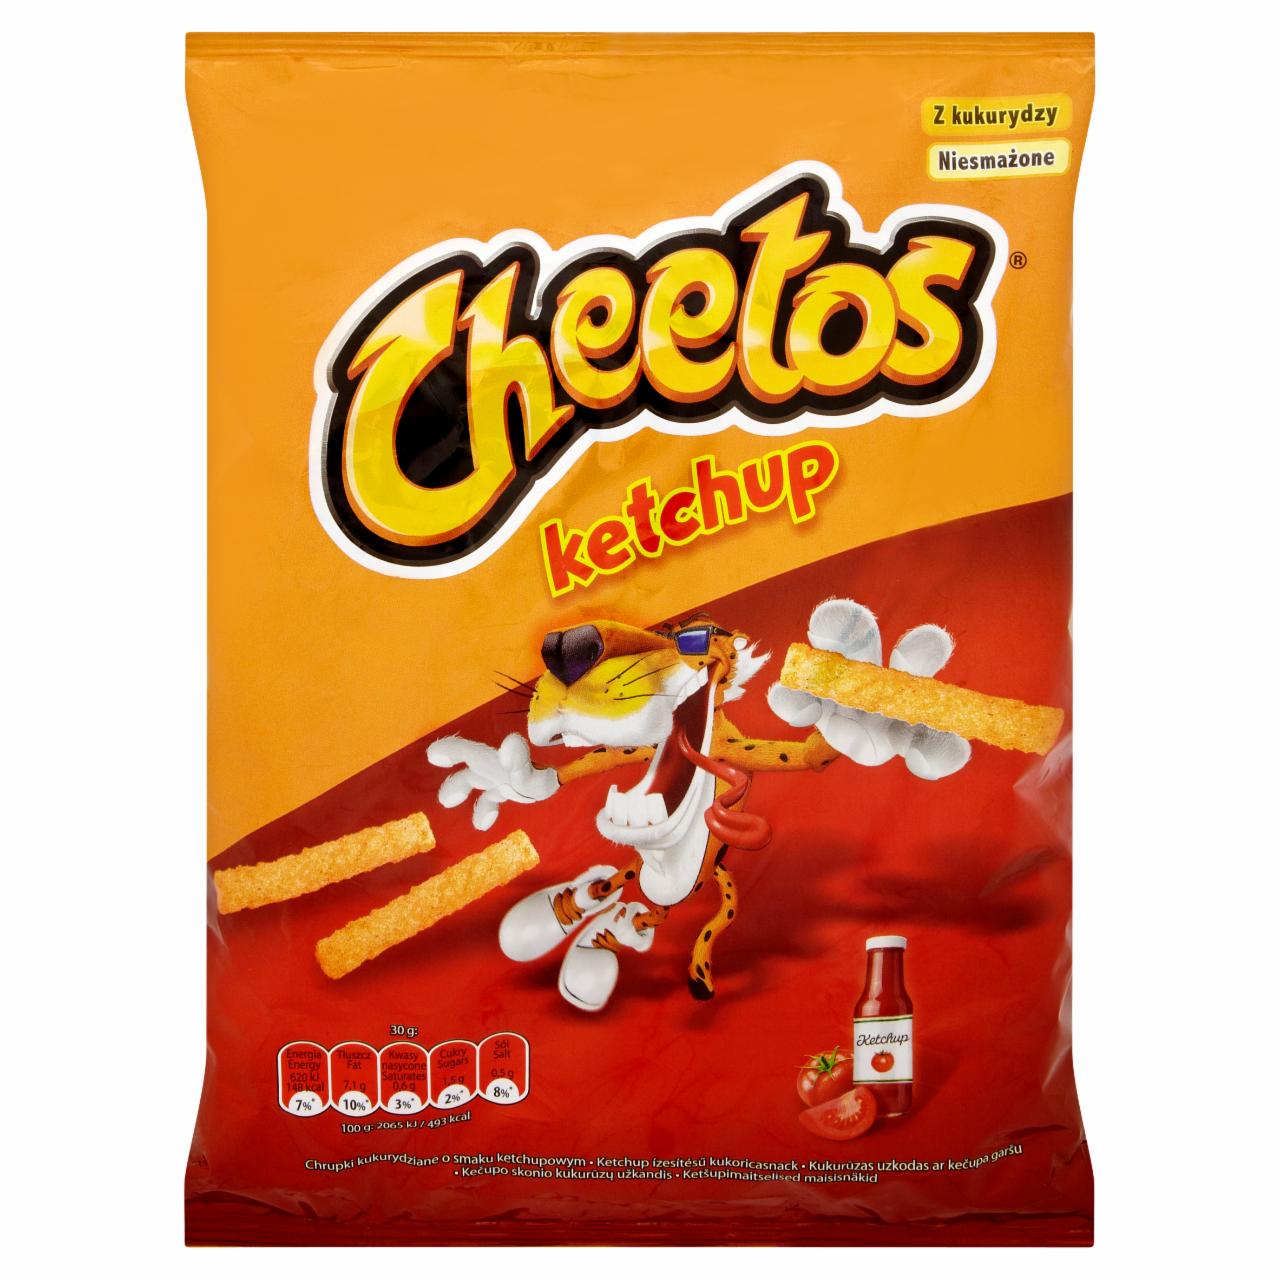 Képek - Cheetos Ketchup ízesítésű kukoricasnack 50 g